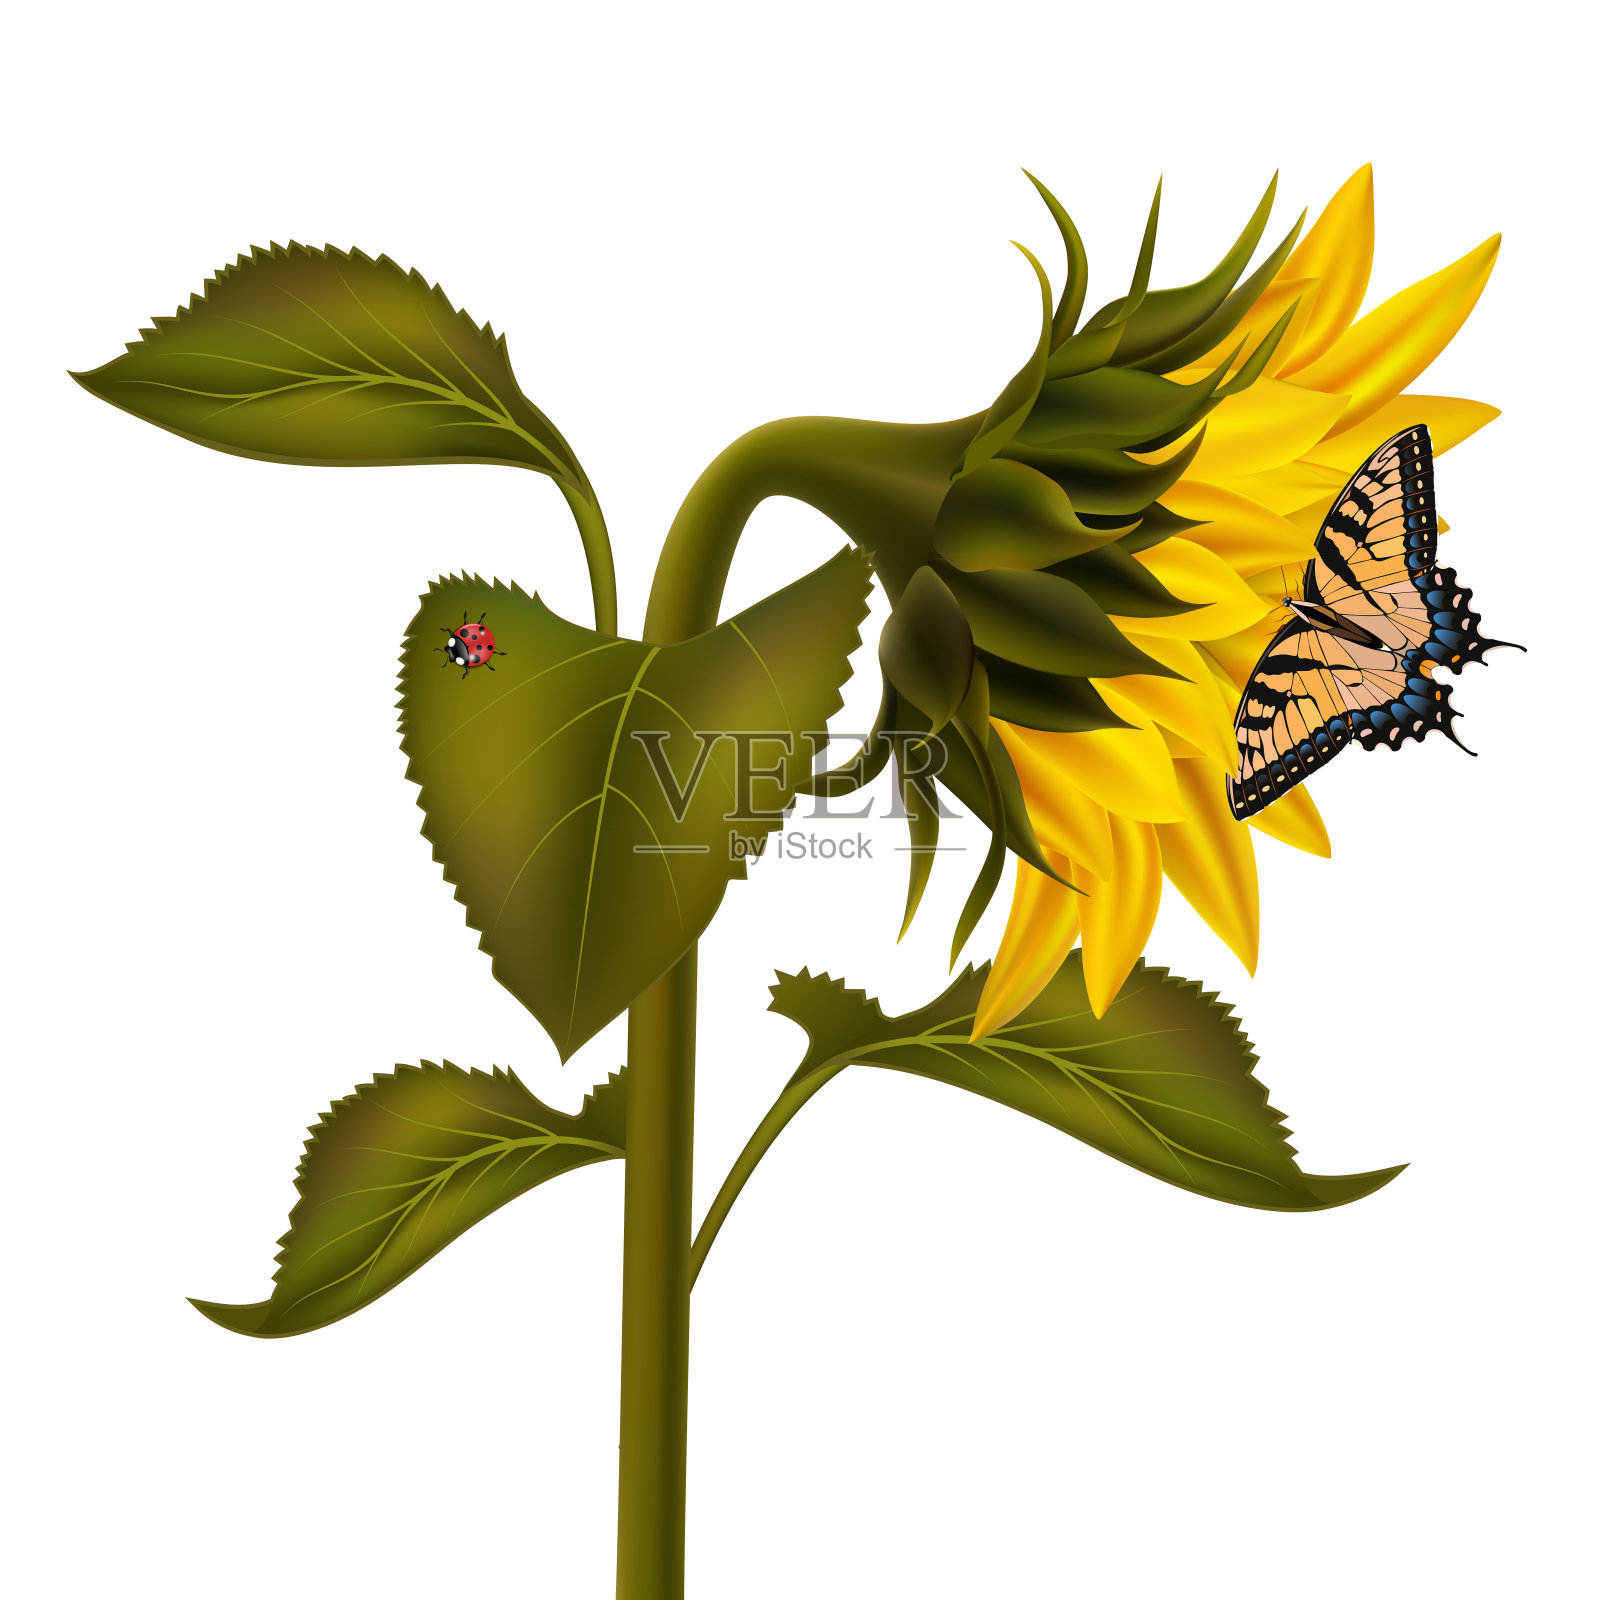 向日葵与瓢虫和燕尾蝶插画图片素材